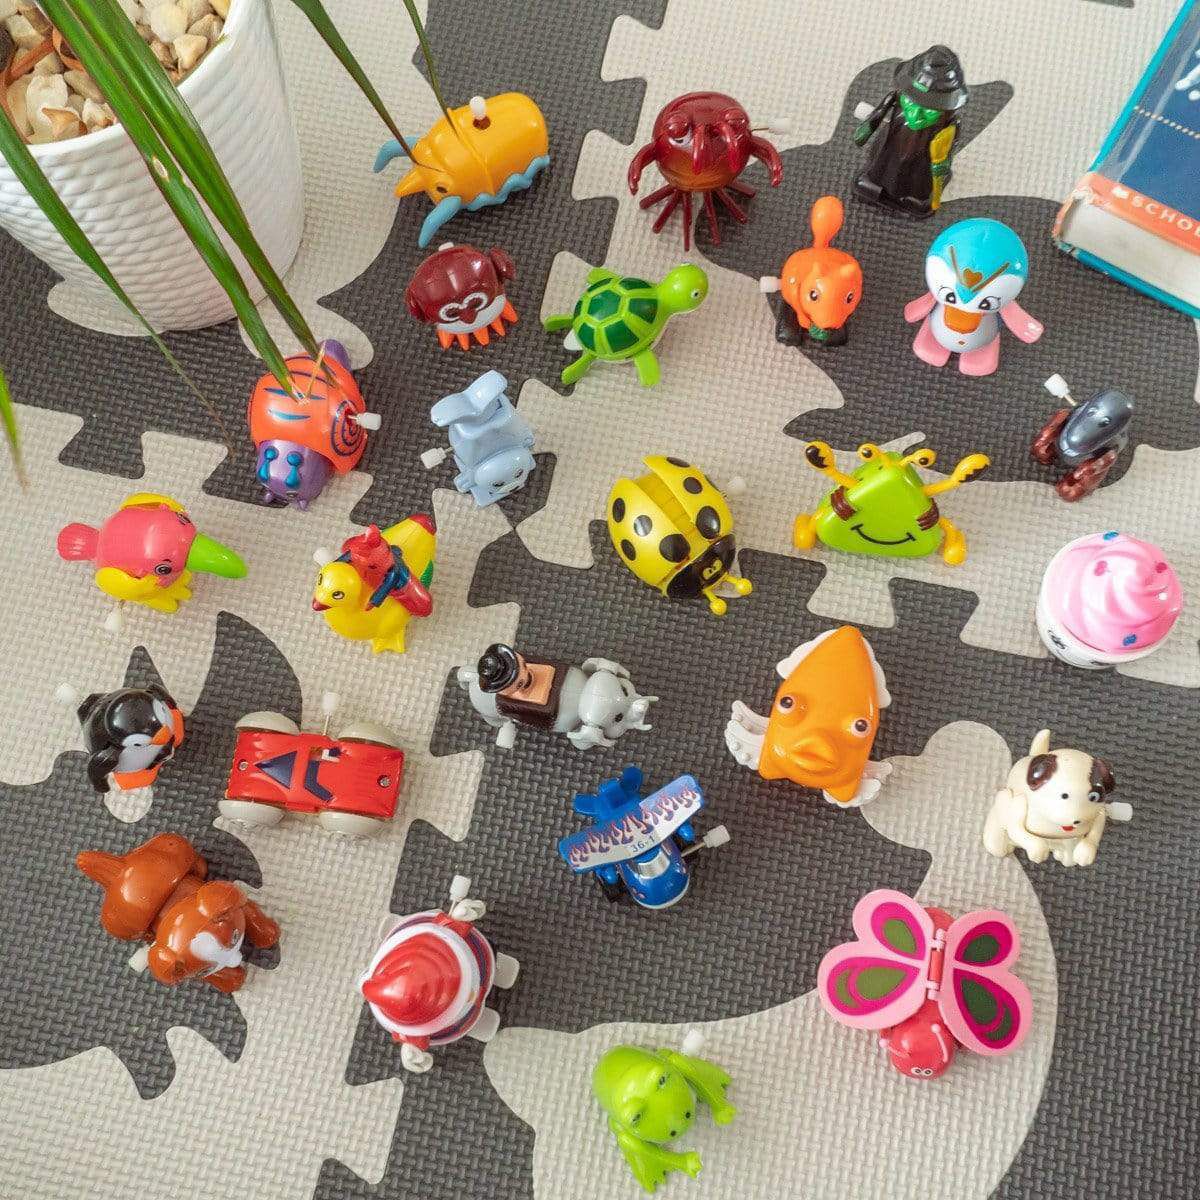 заводные игрушки без батарейки прыгающая принцесса заводные игрушки для взрослых заводные игрушки на хэллоуин для детей мальчиков и дев Заводные игрушки Popfun